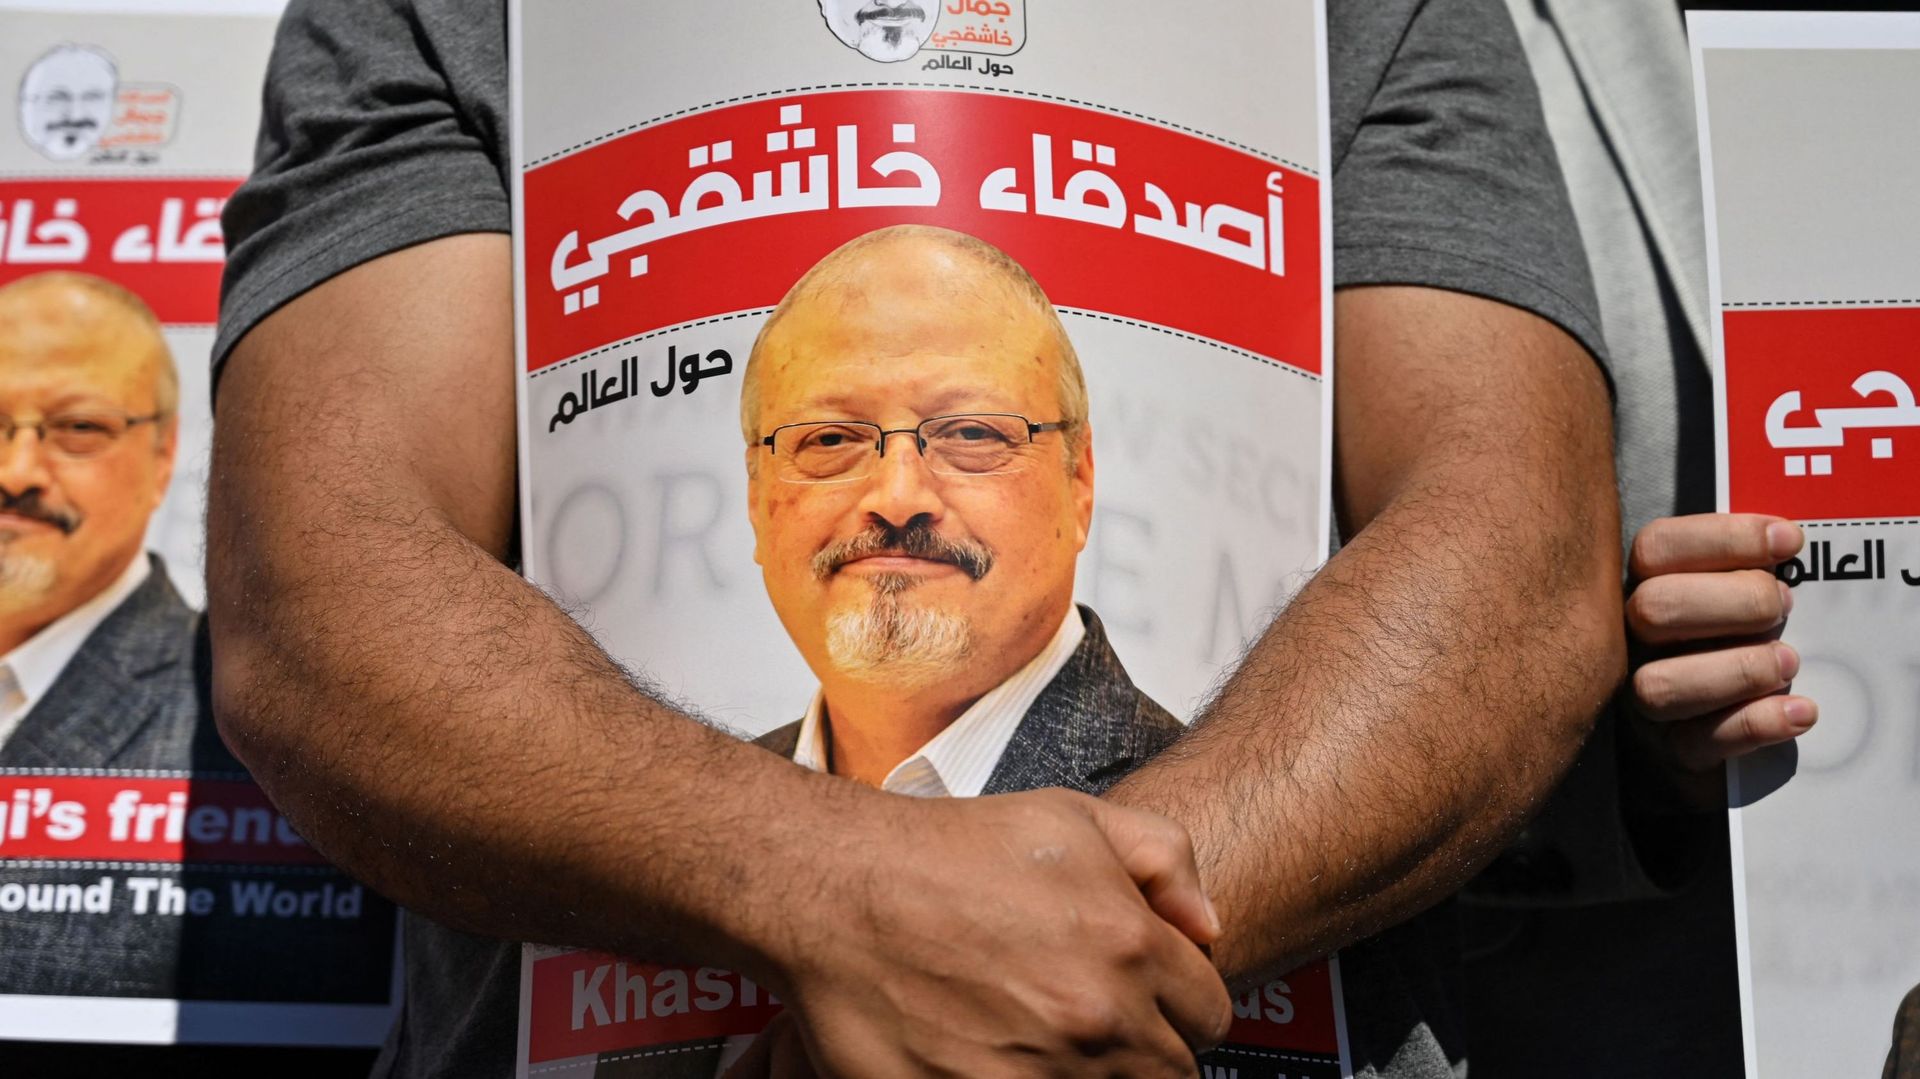 Affaire Khashoggi: Ryad rejette le rapport américain qui accuse le prince héritier d'avoir validé l'assassinat du journaliste